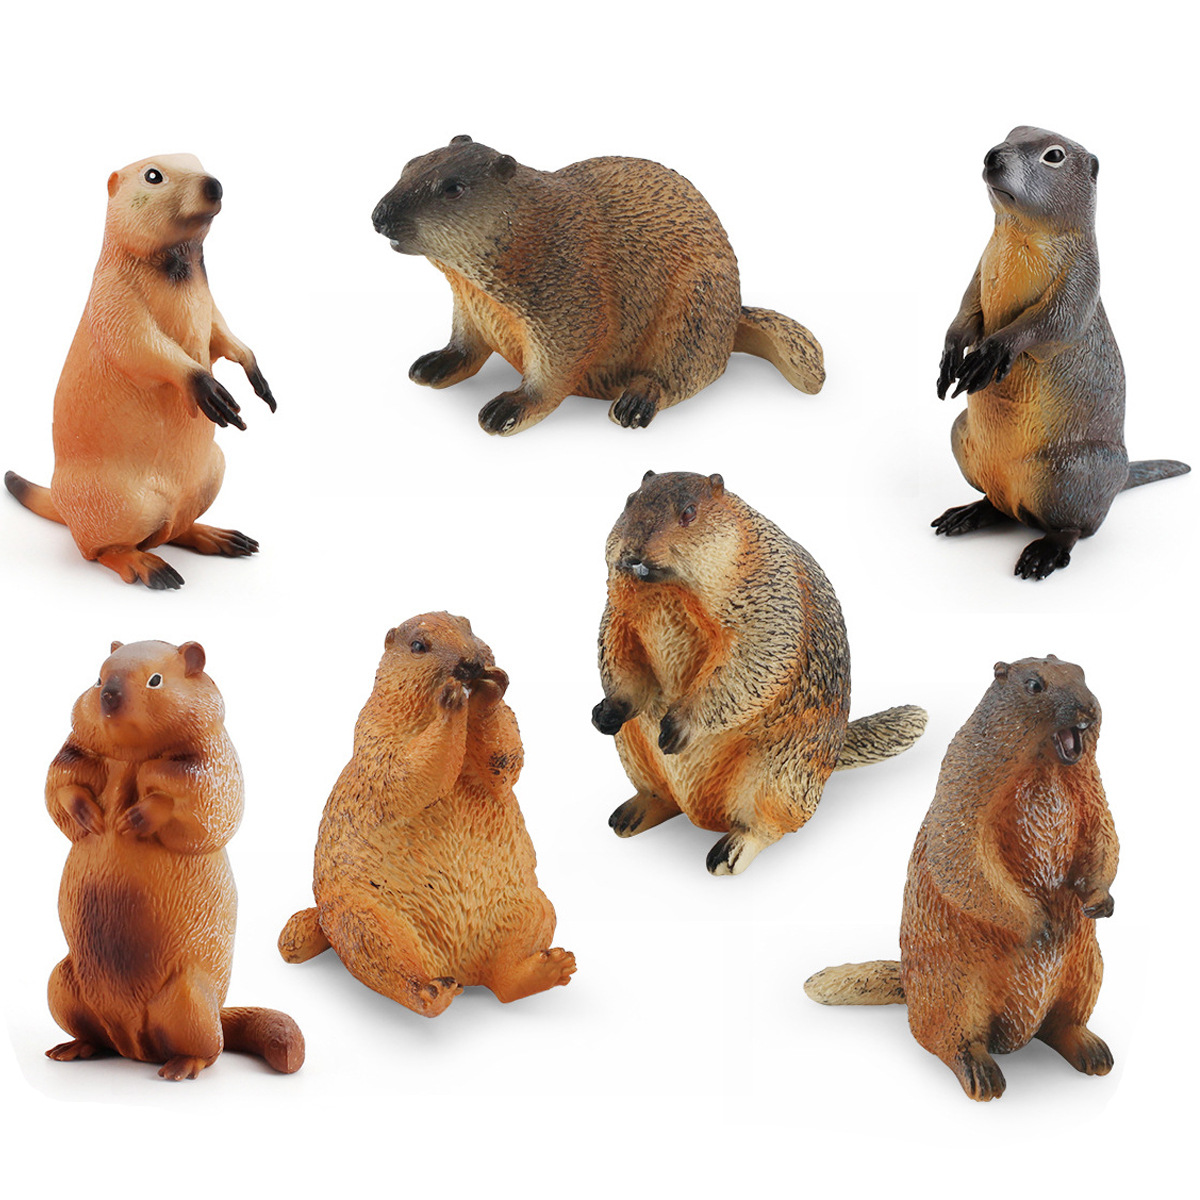 8款Marmot旱獭土拨鼠模型实心仿真草原犬鼠花栗鼠Cynomys摆件玩具